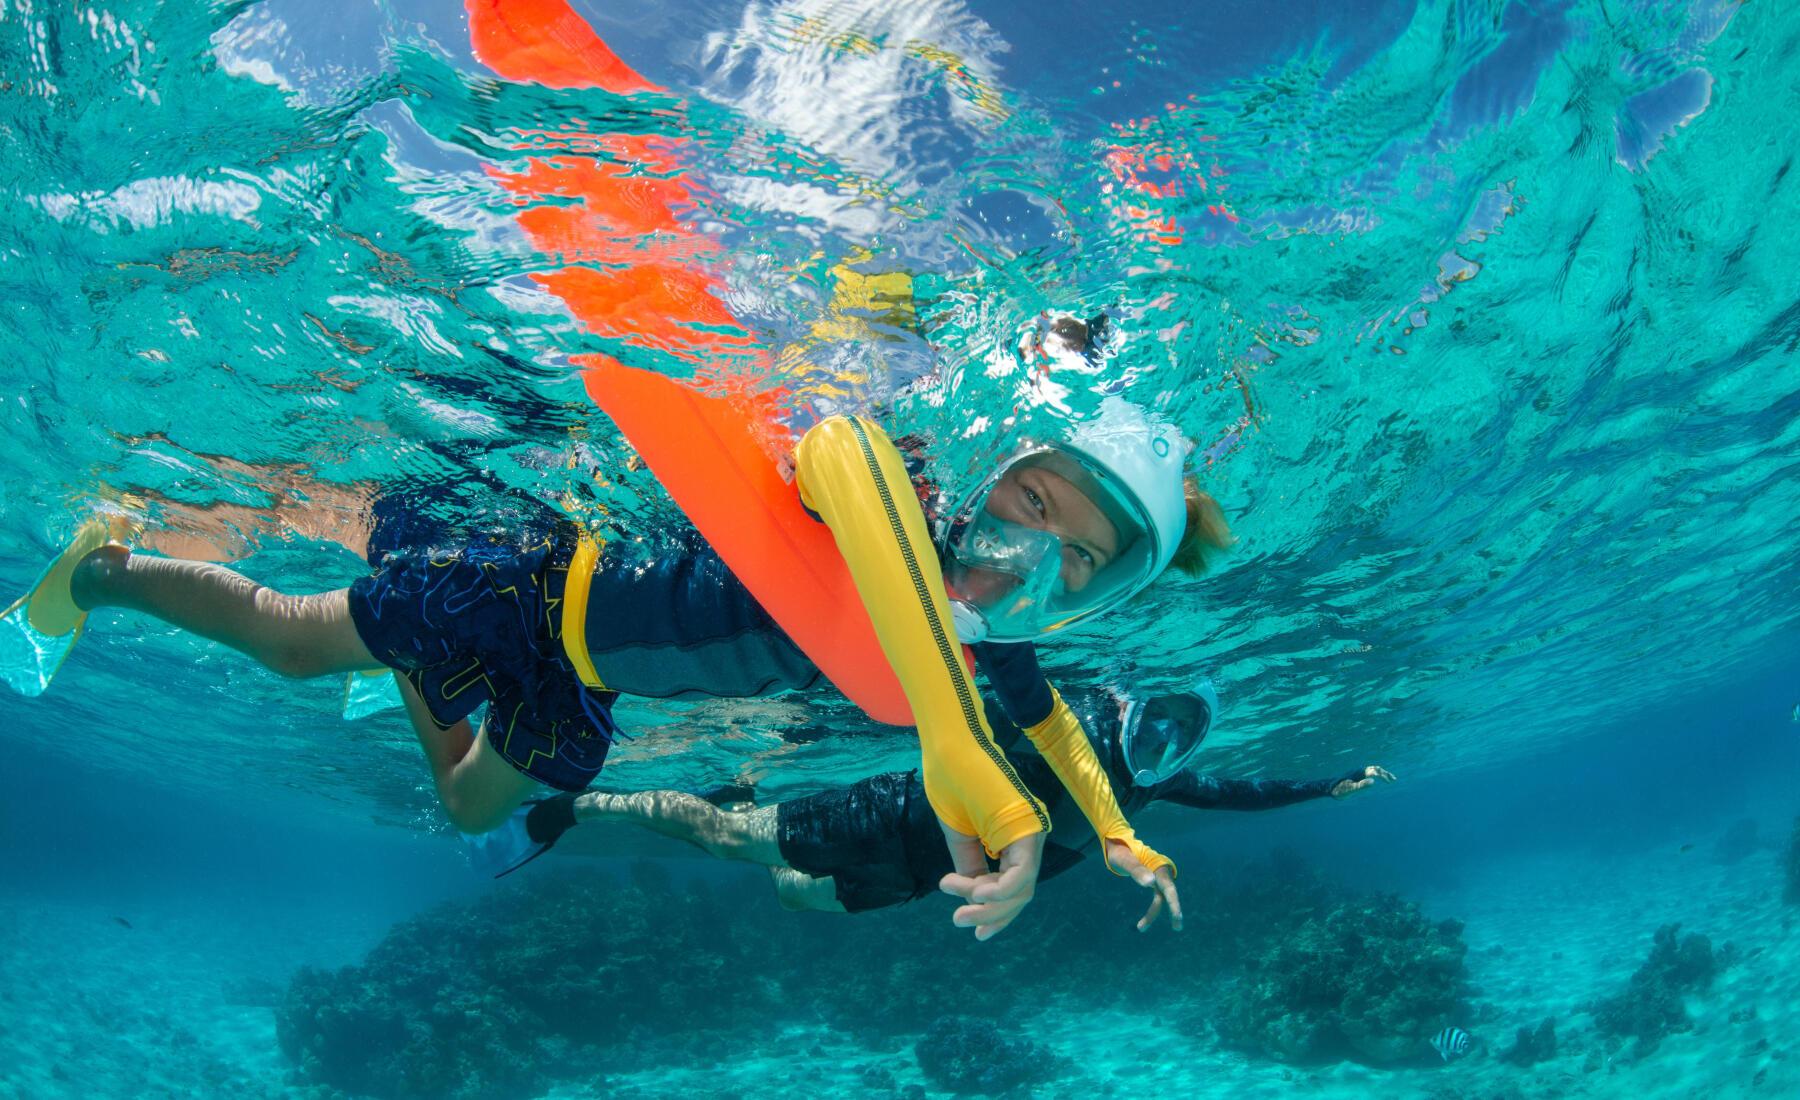 As vantagens de ter uma ajuda à flutuabilidade no snorkeling, passeio aquático